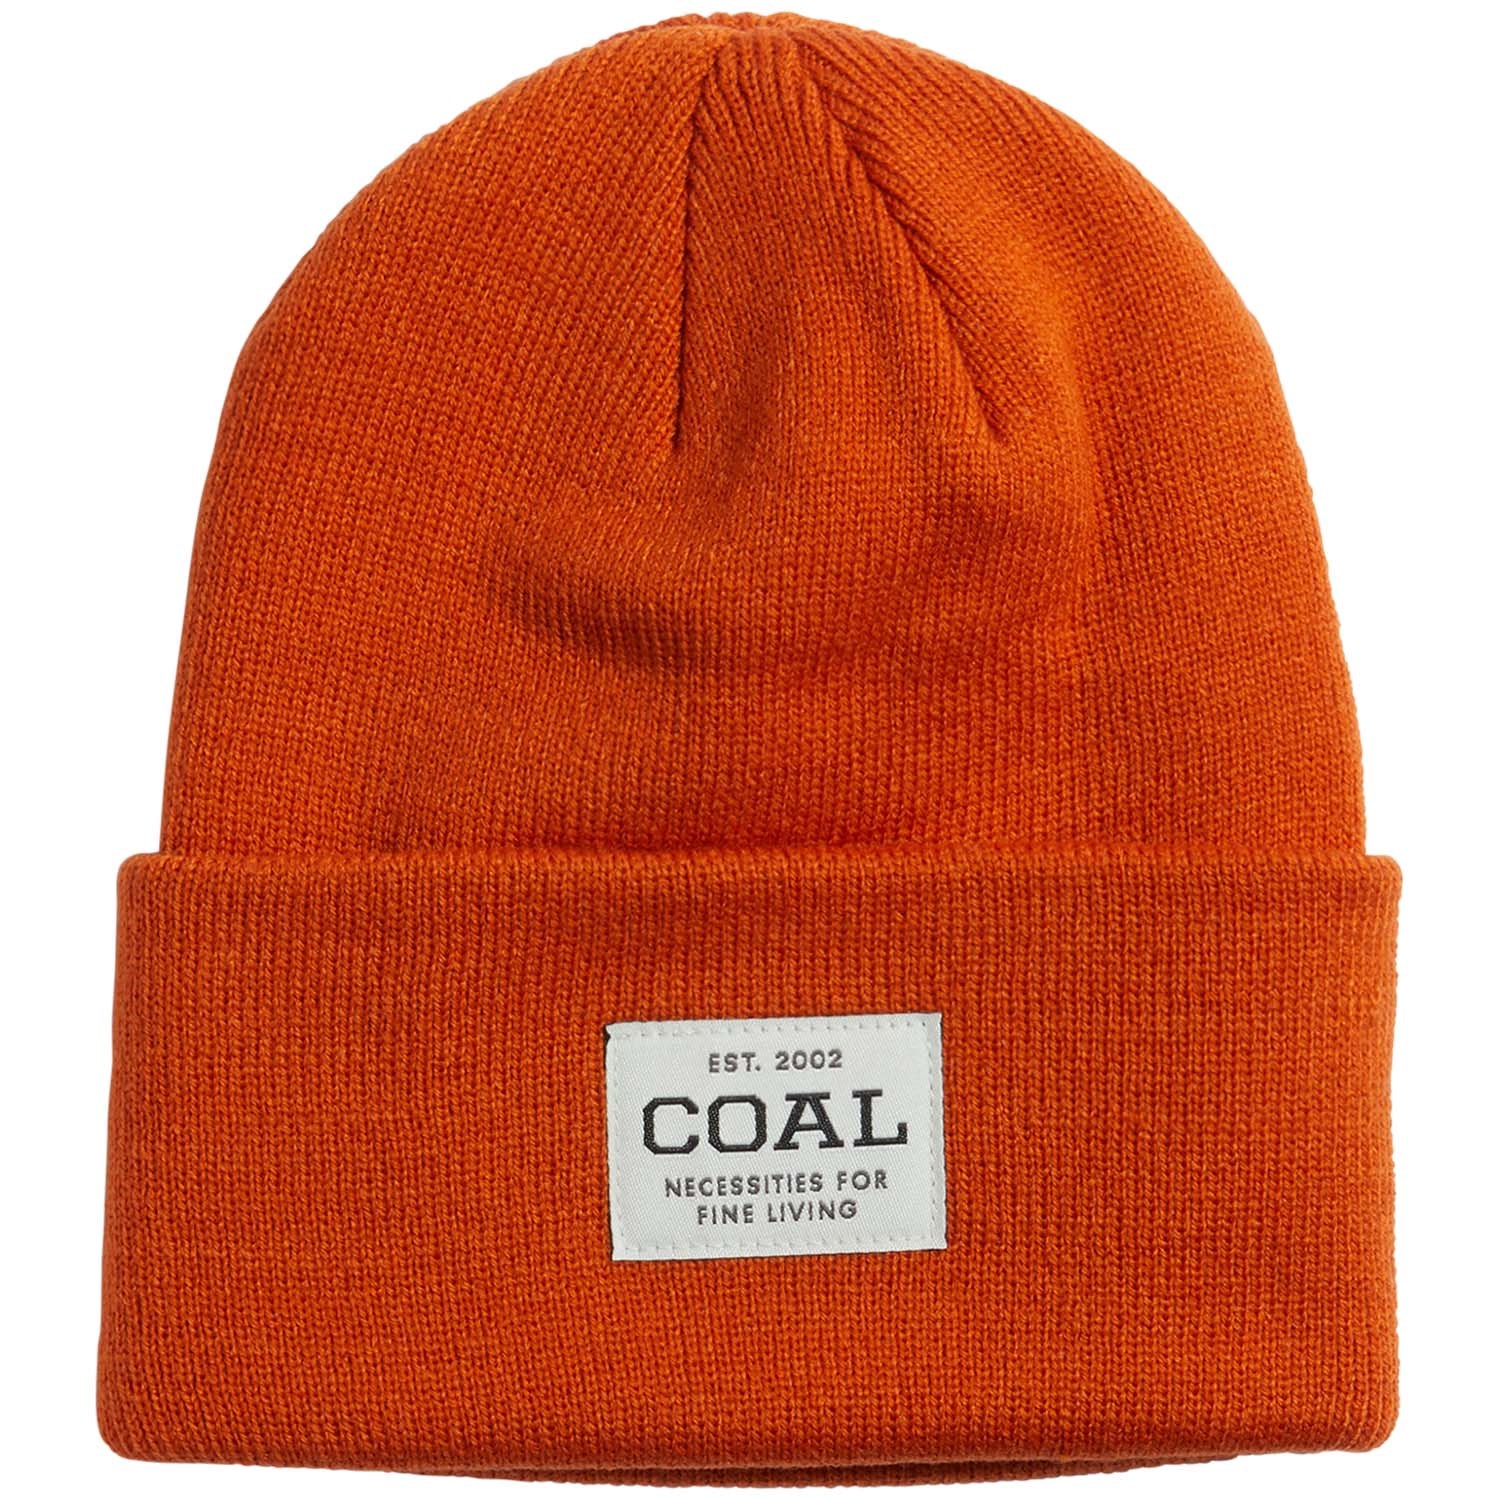 Шапка Coal Uniform, оранжевый шапка для мальчиков оранжевый